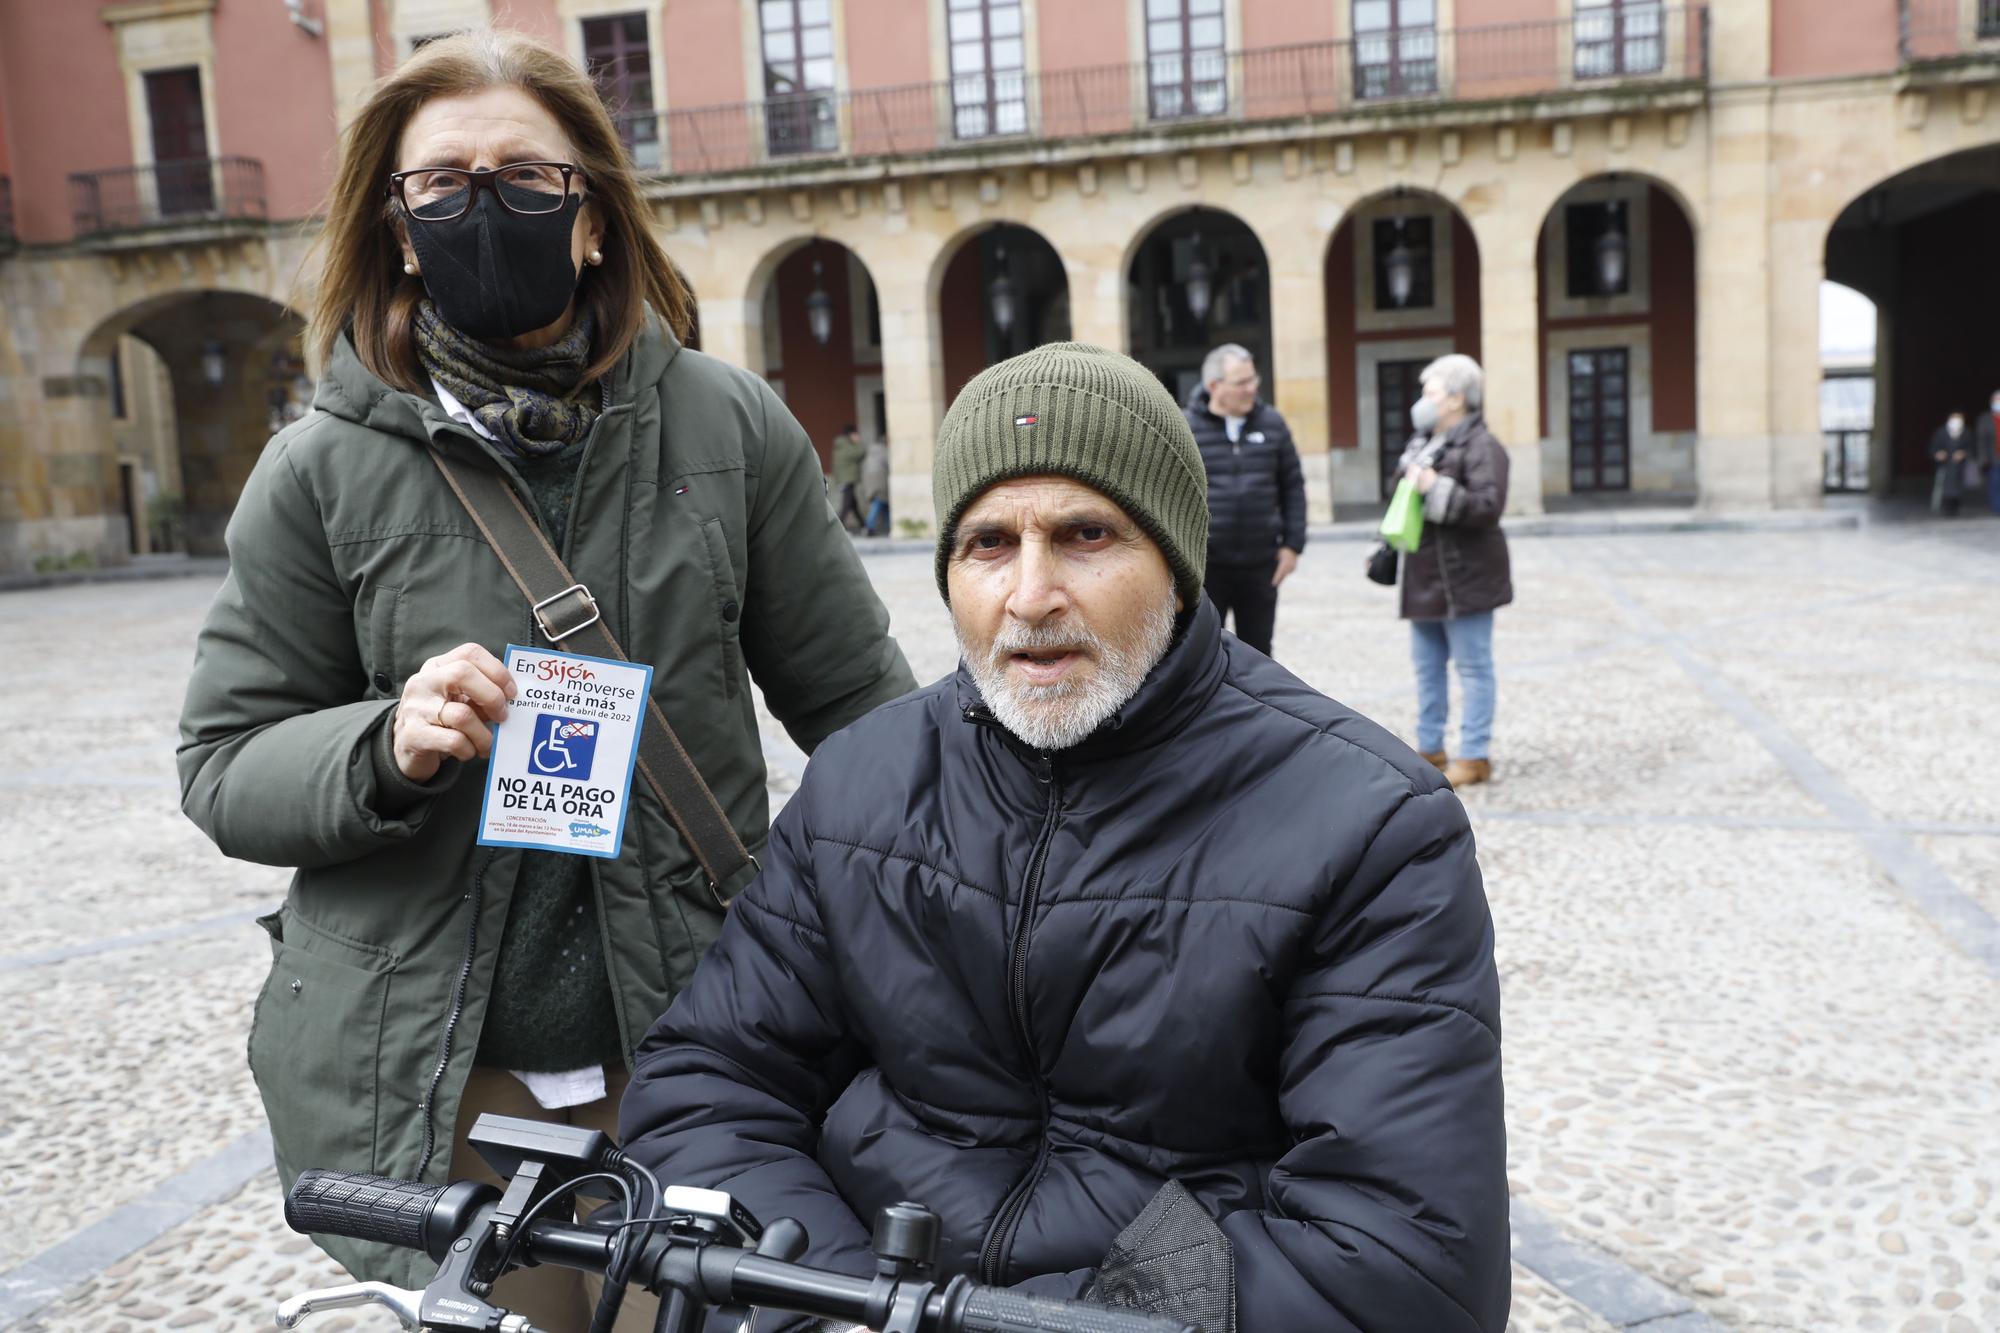 En imágenes: Concentración de personas con movilidad reducida contra la tarjeta ORA en Gijón